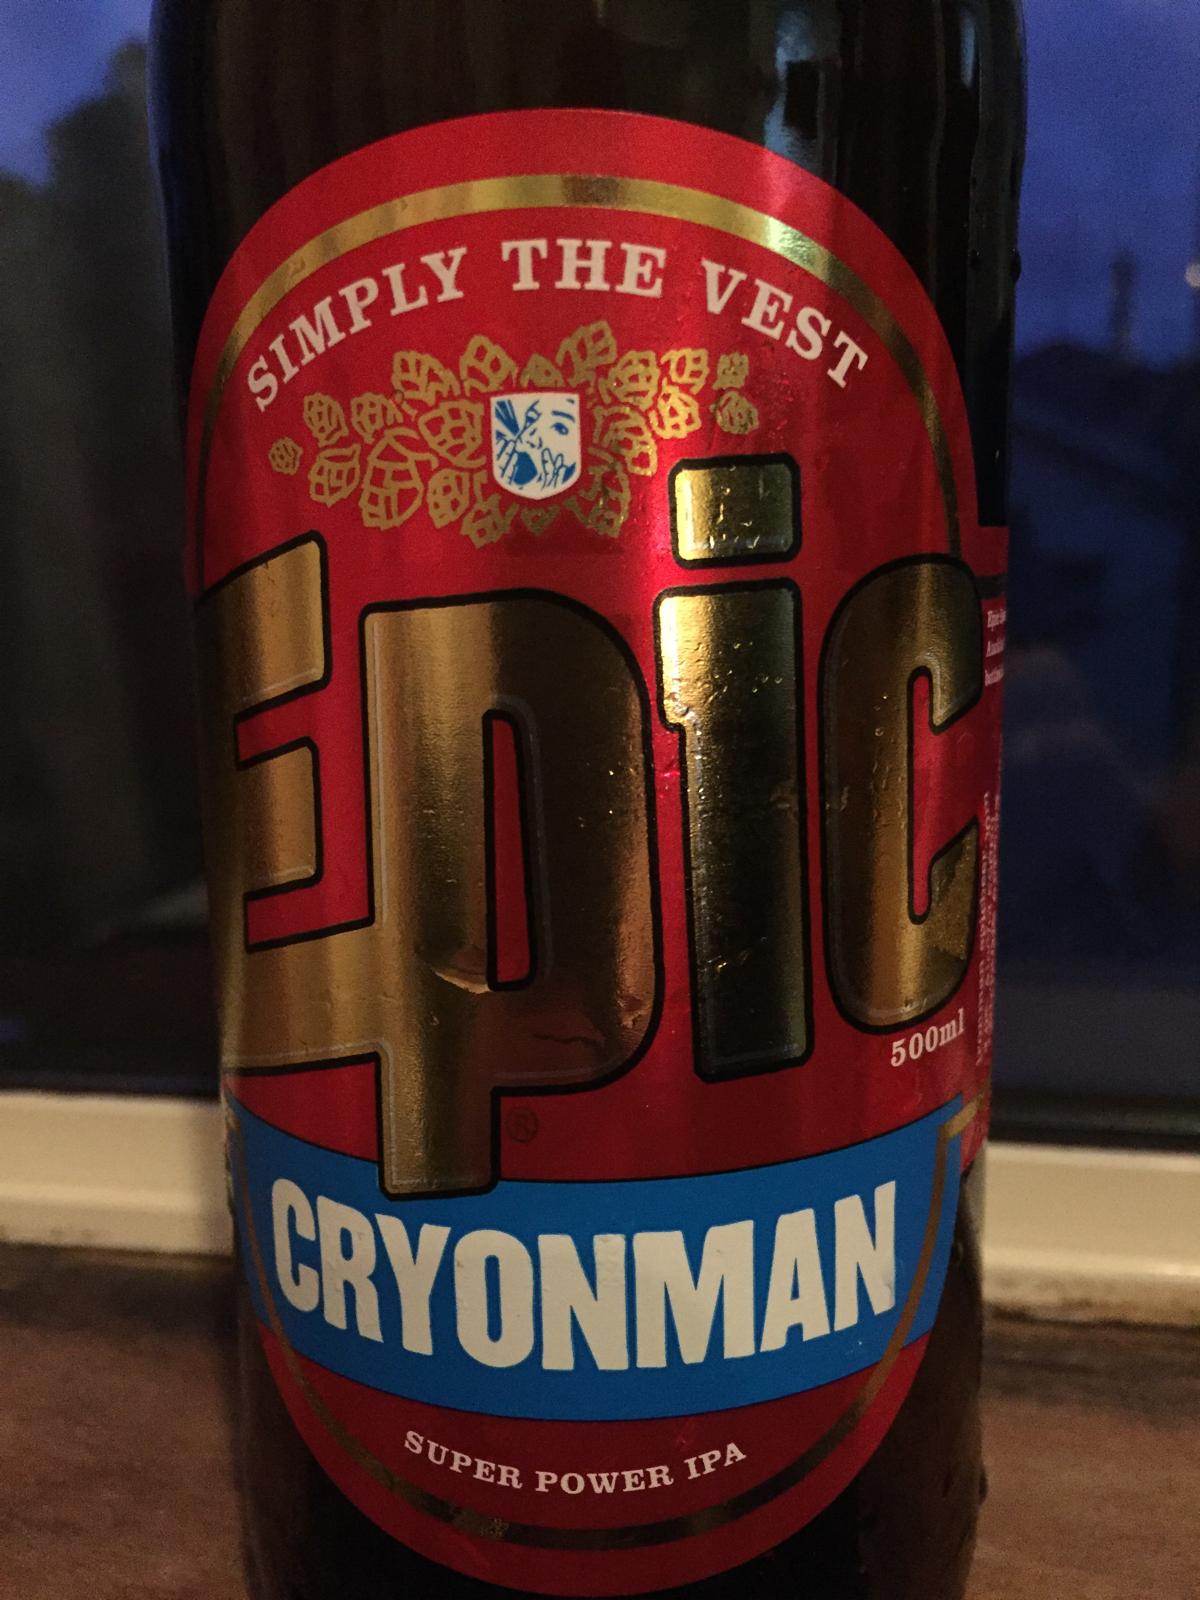 Cryonman